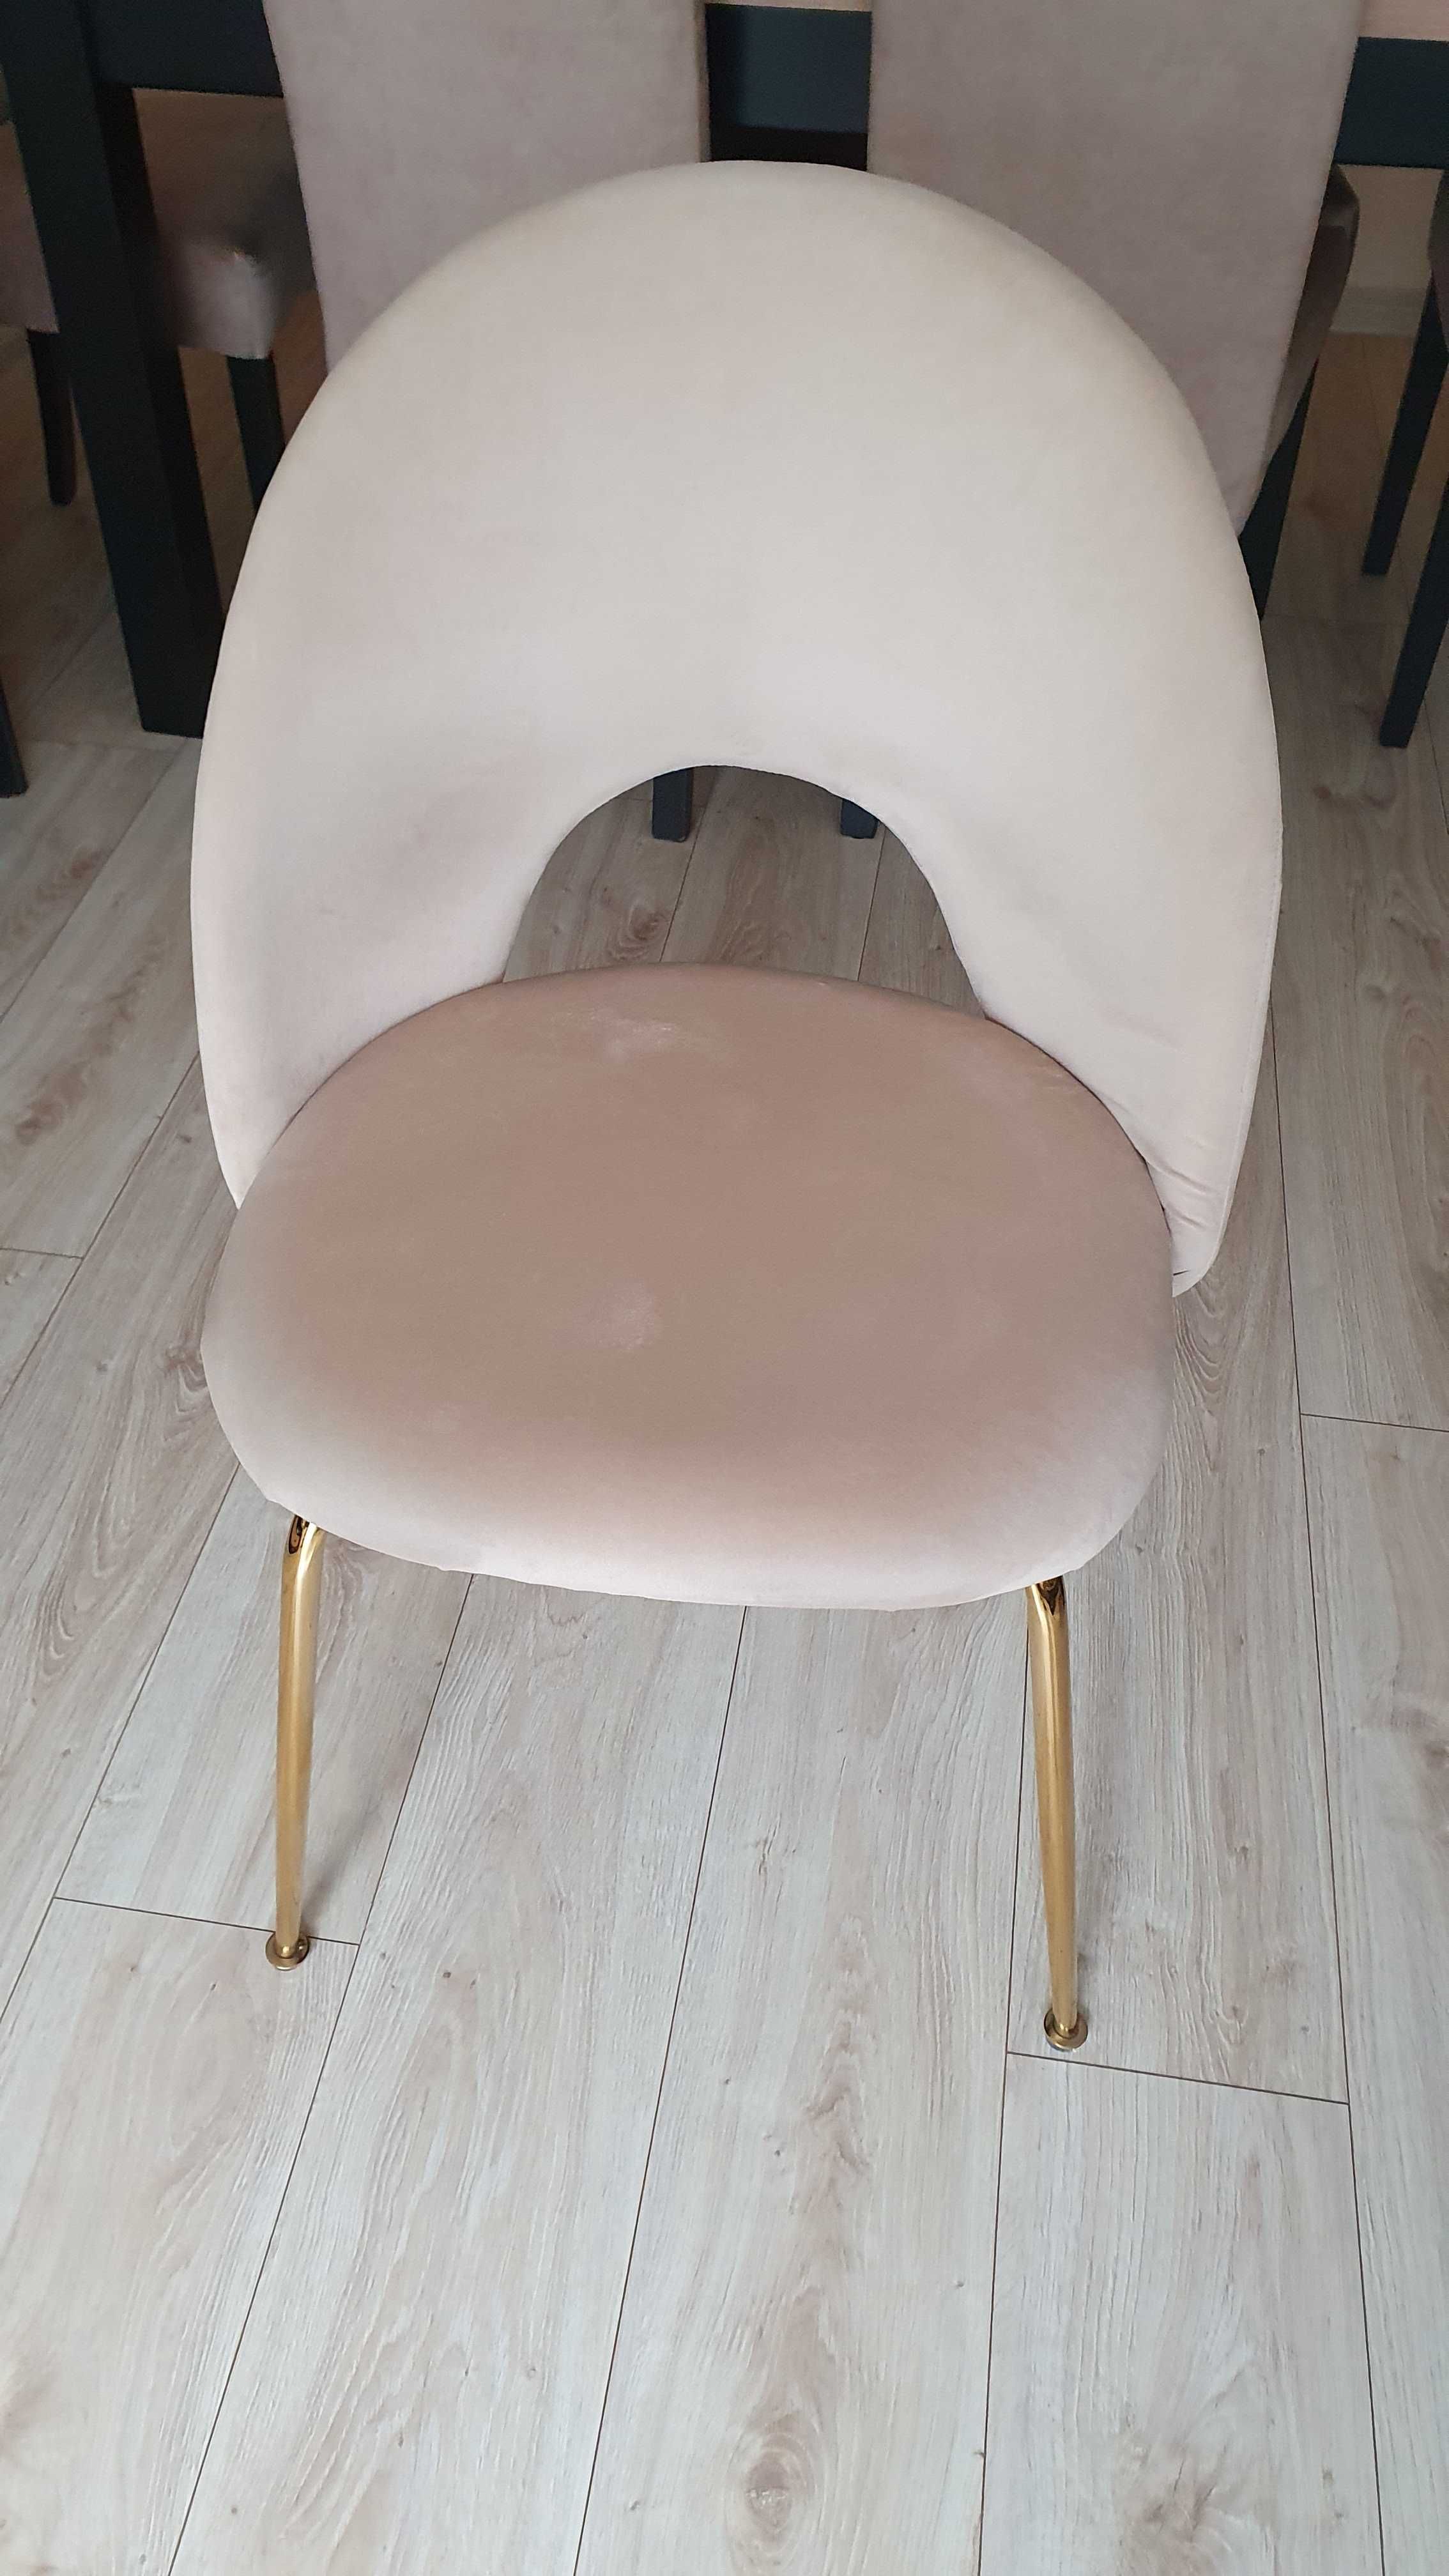 Krzesło beżowe jasny beż kremowe krzesło złote nogi glamour welur